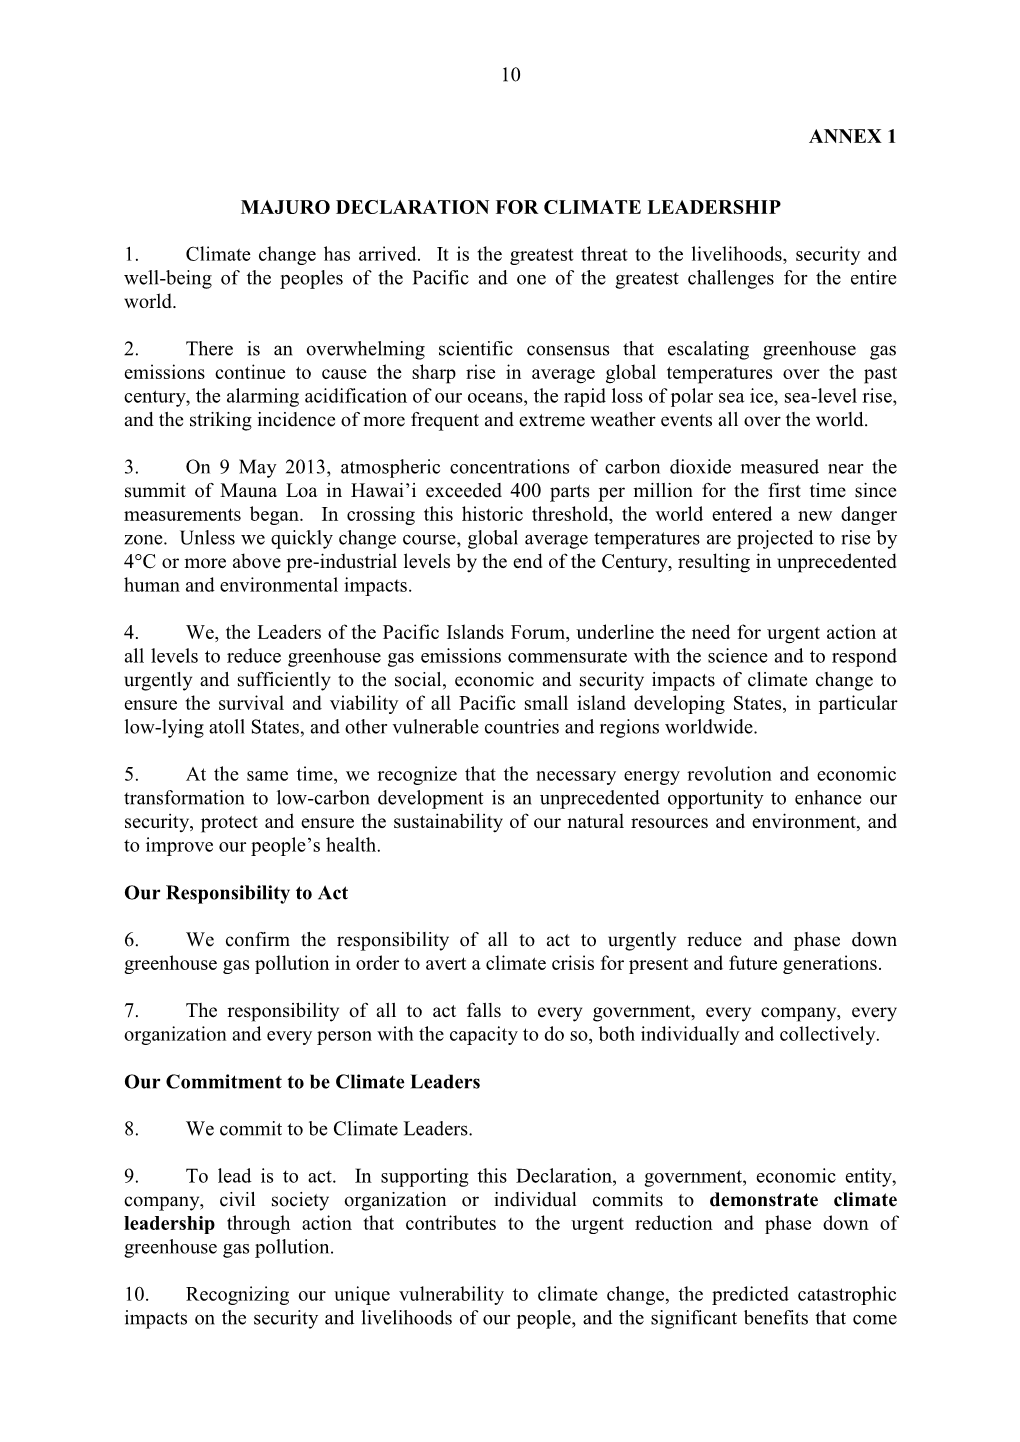 Majuro Declaration on Climate Leadership